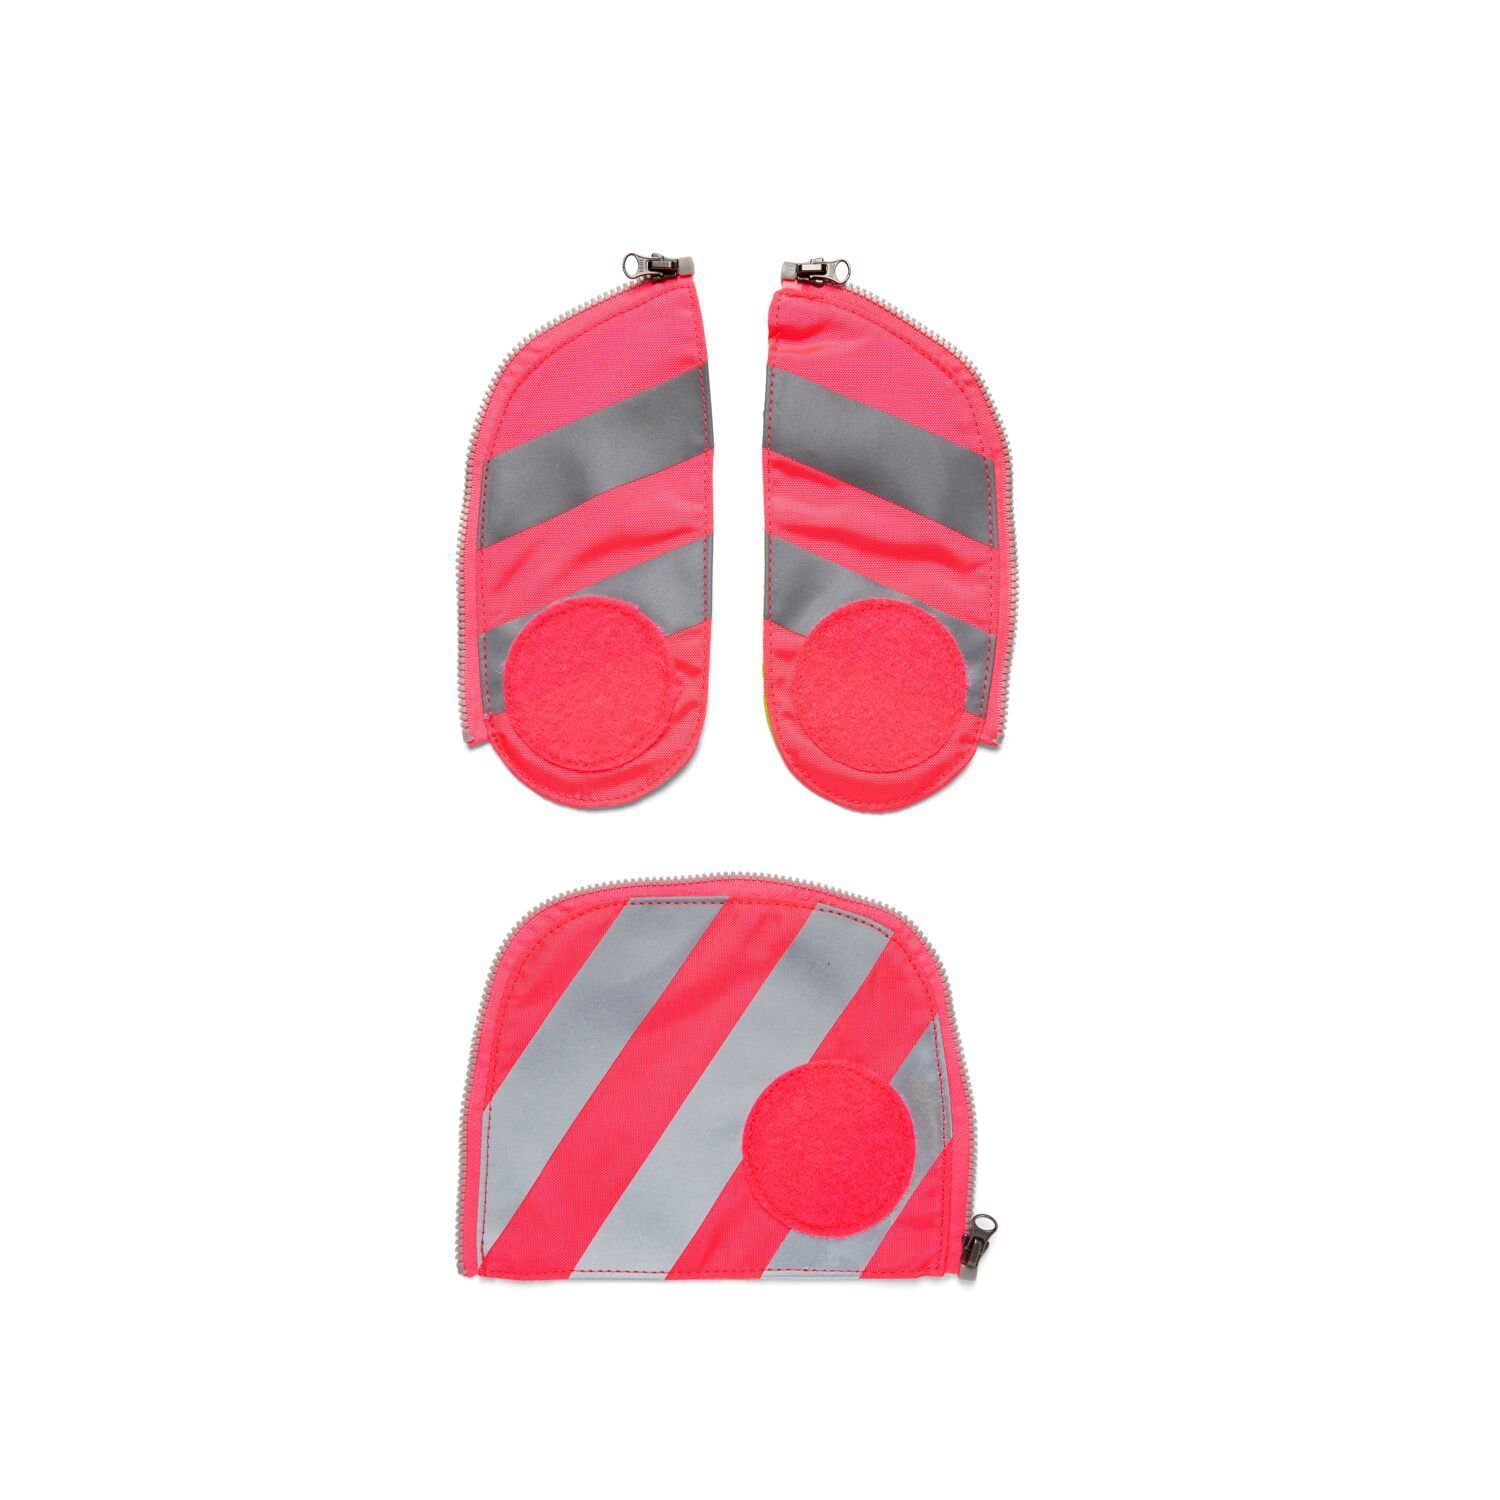 ergobag Schulranzen Fluo Zip-Set Pink mit Reflektorstreifen Sicherheits-Set (3-teilig), fluoreszierender Stoff, Sichtbarkeit 002-511 Pink